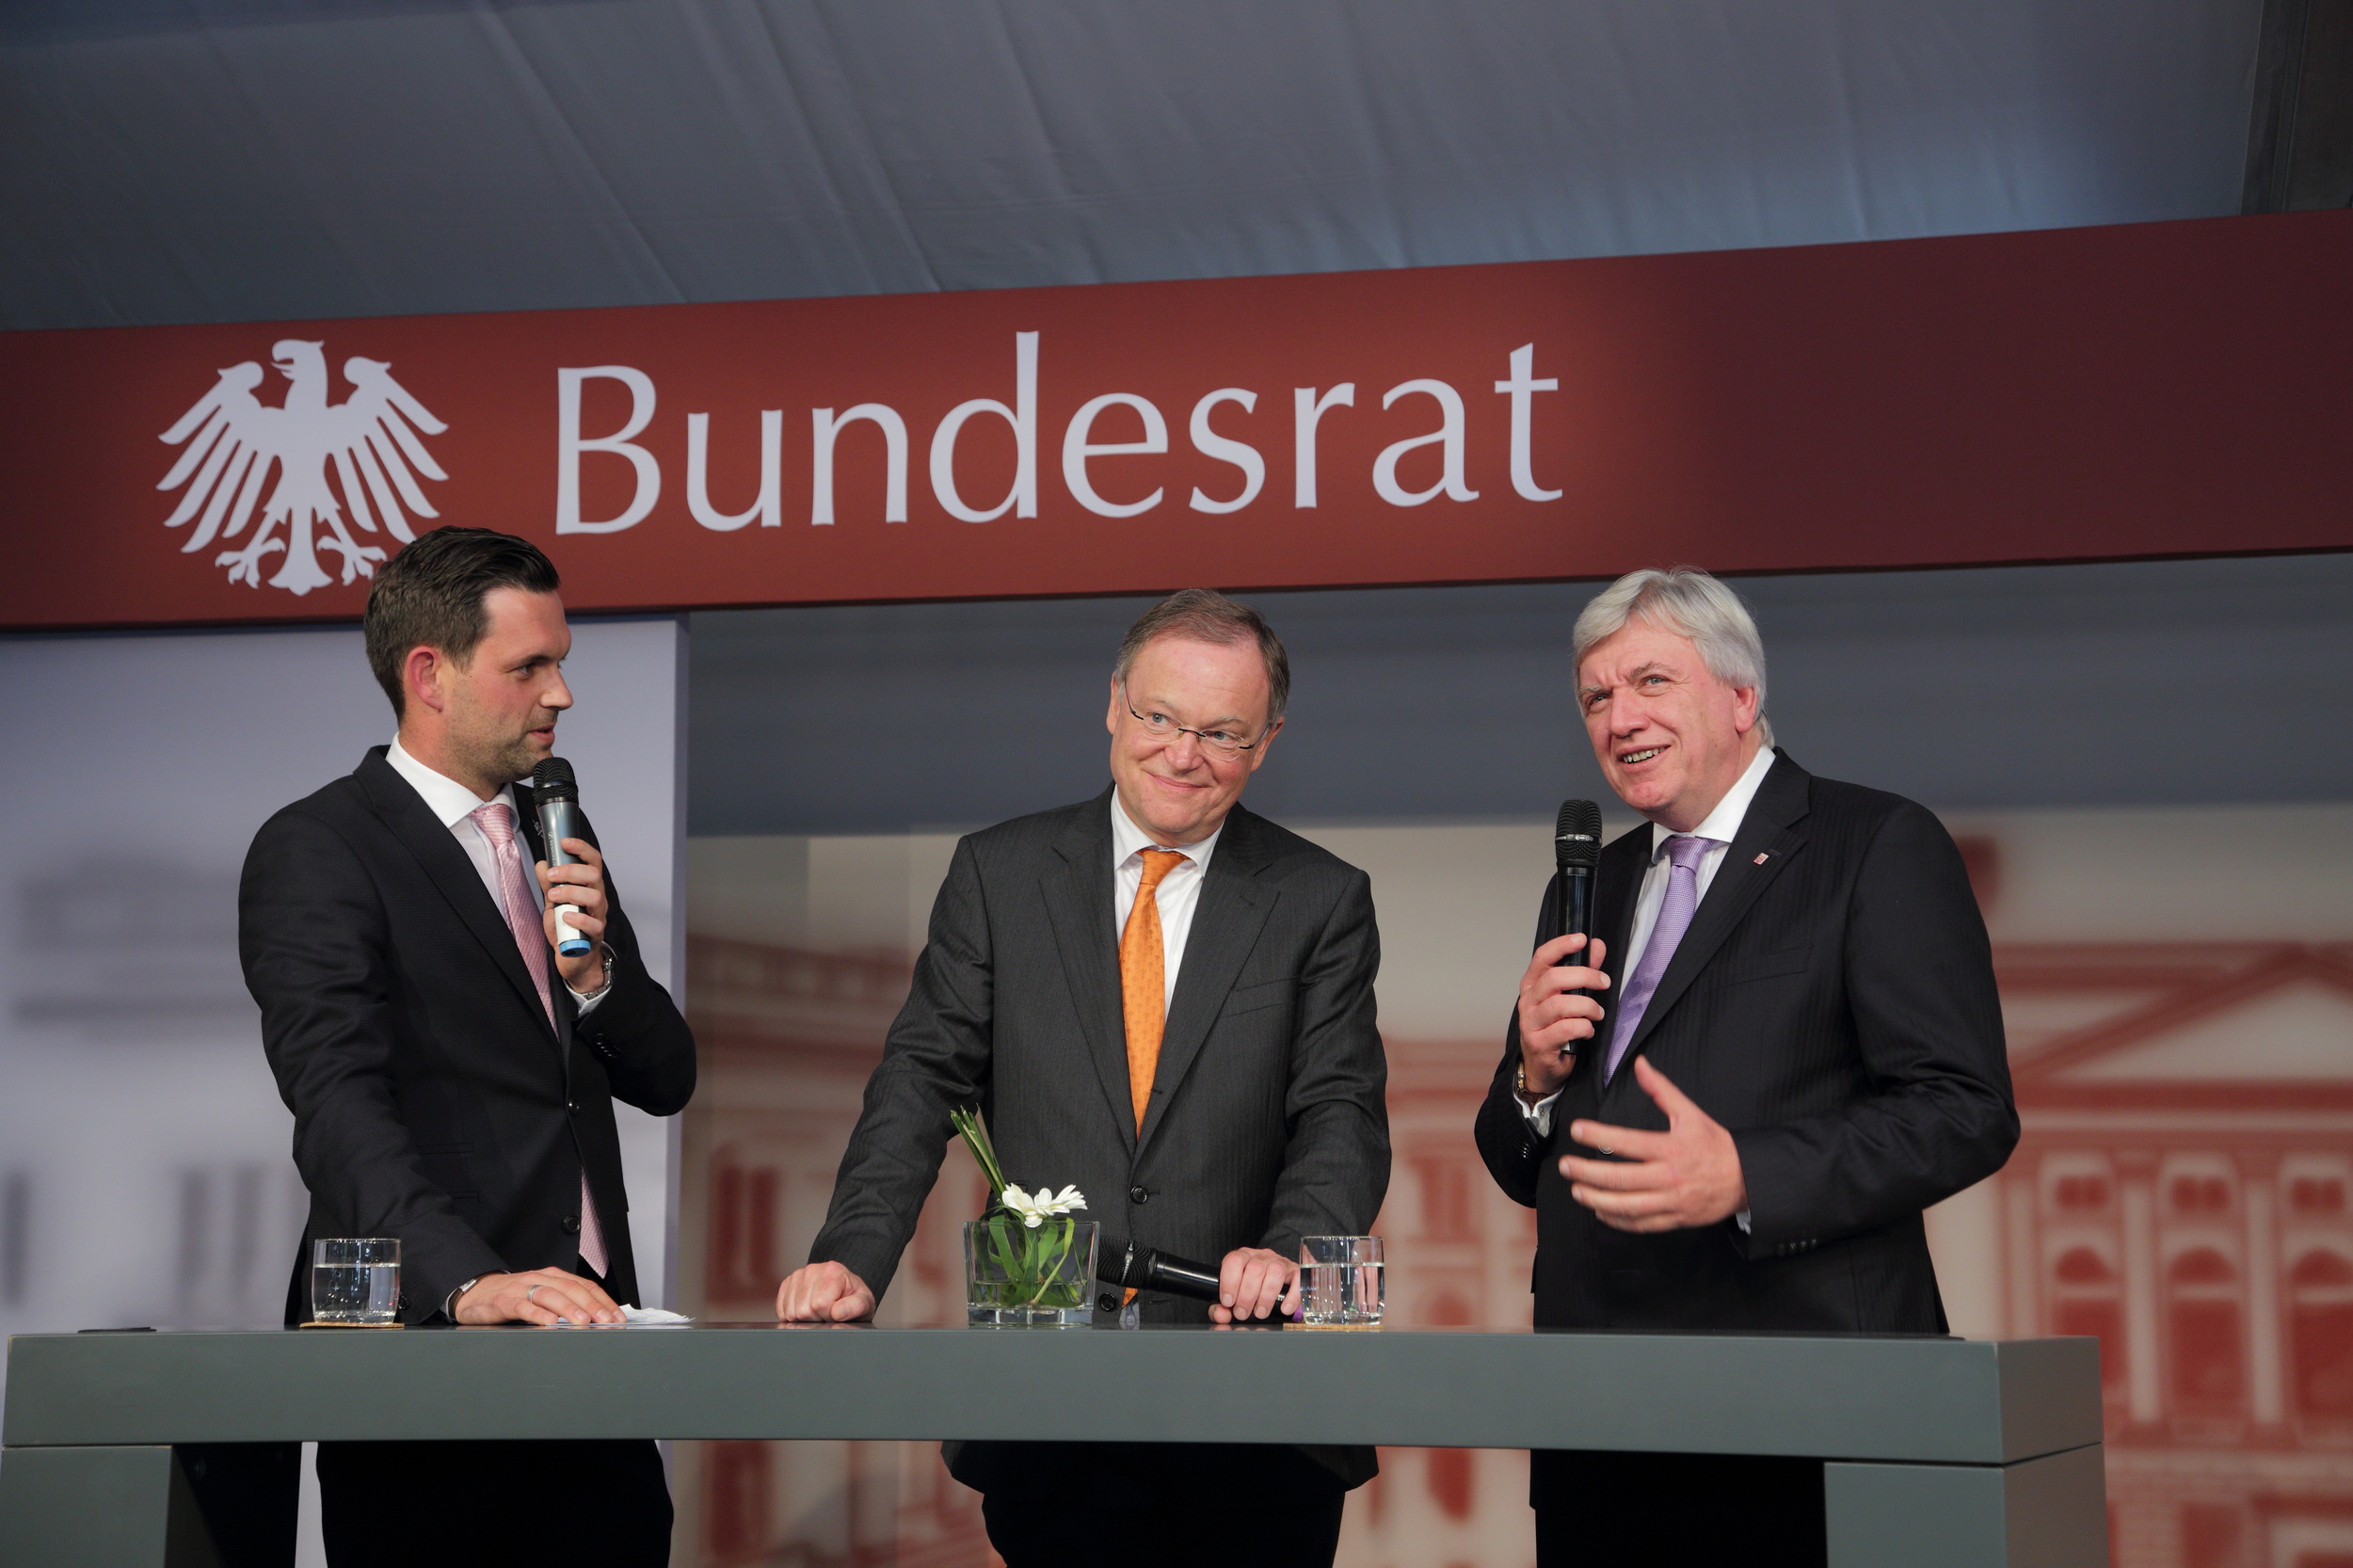 Bundesrat_Tag-der-Deutschen-Einheit_Hannover2014_330.JPG